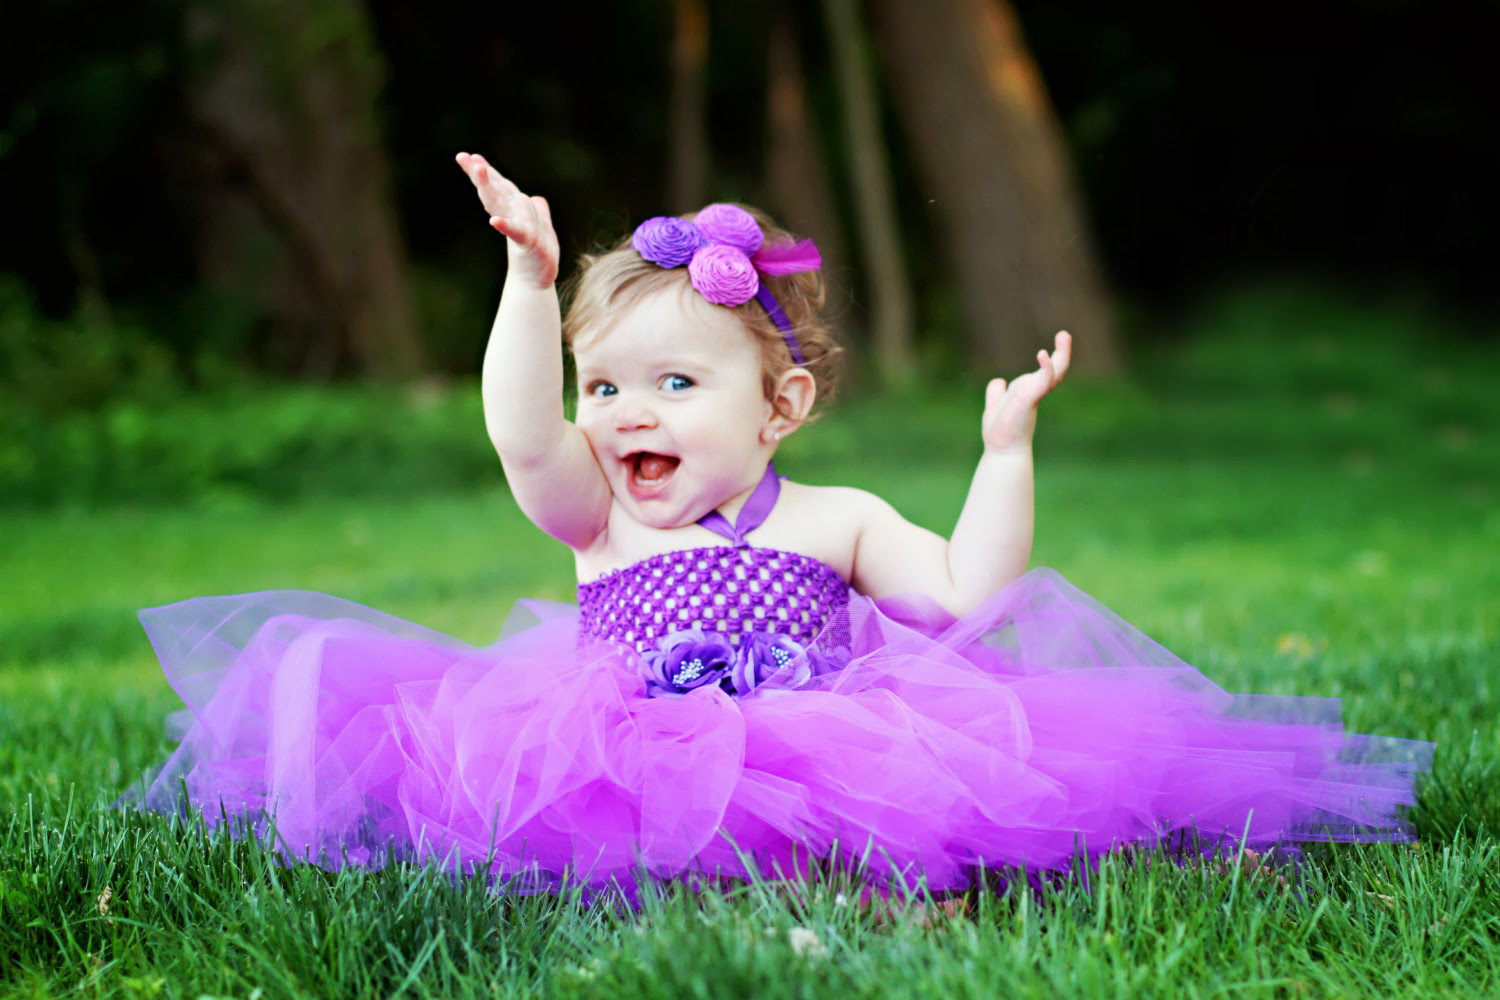  Cute Baby   Sweet Baby HD Wallpaper in 1080p Super HD Wallpaperss 1500x1000